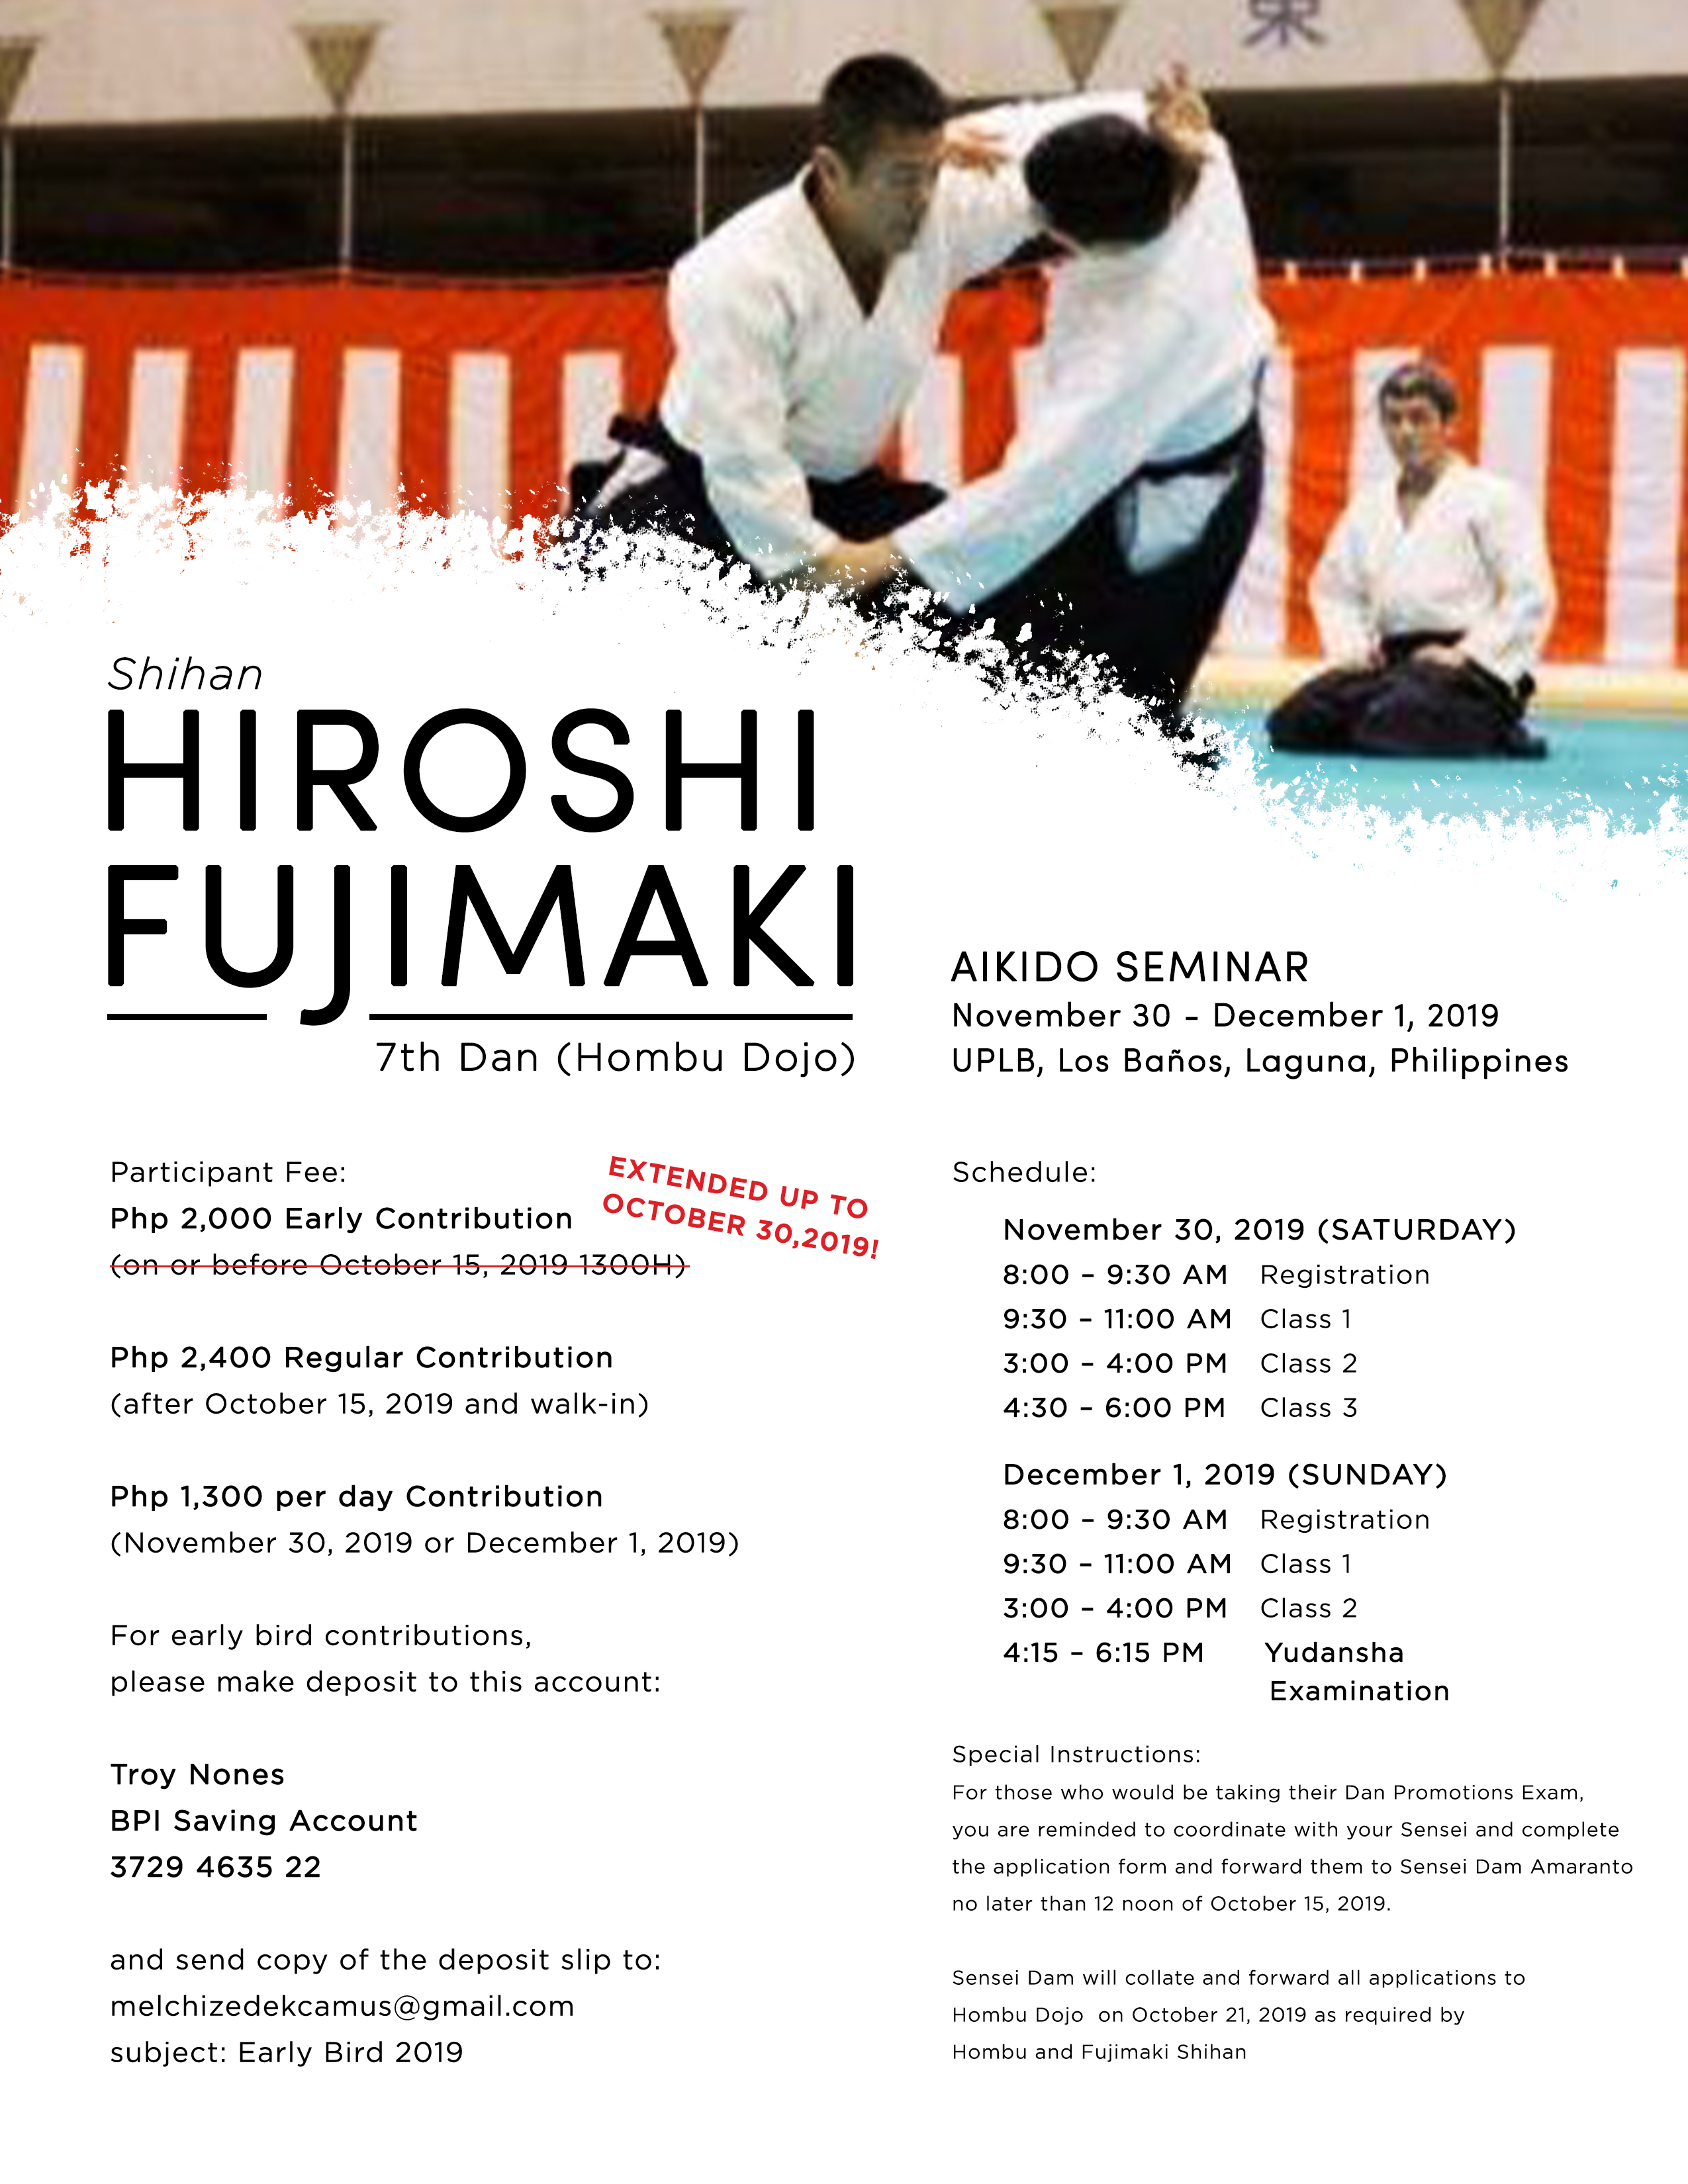 HiroshiFujimaki-2019Seminar